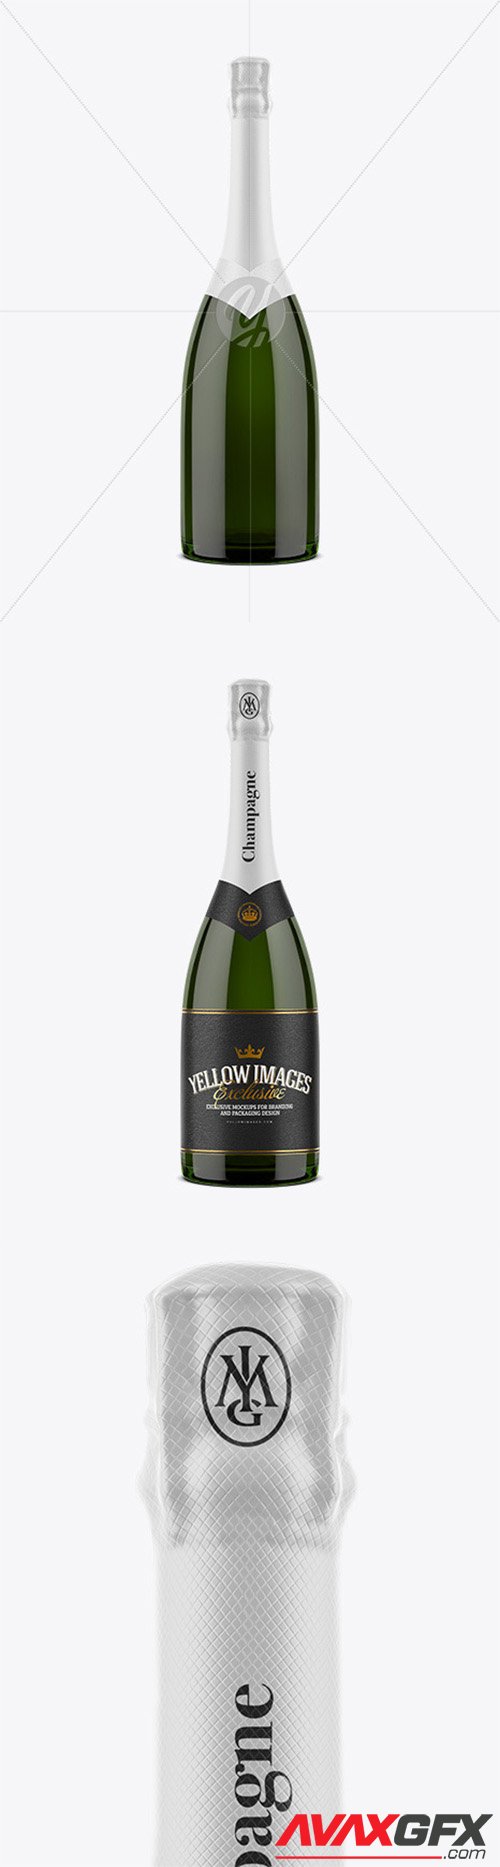 Champagne Bottle Mockup 52756